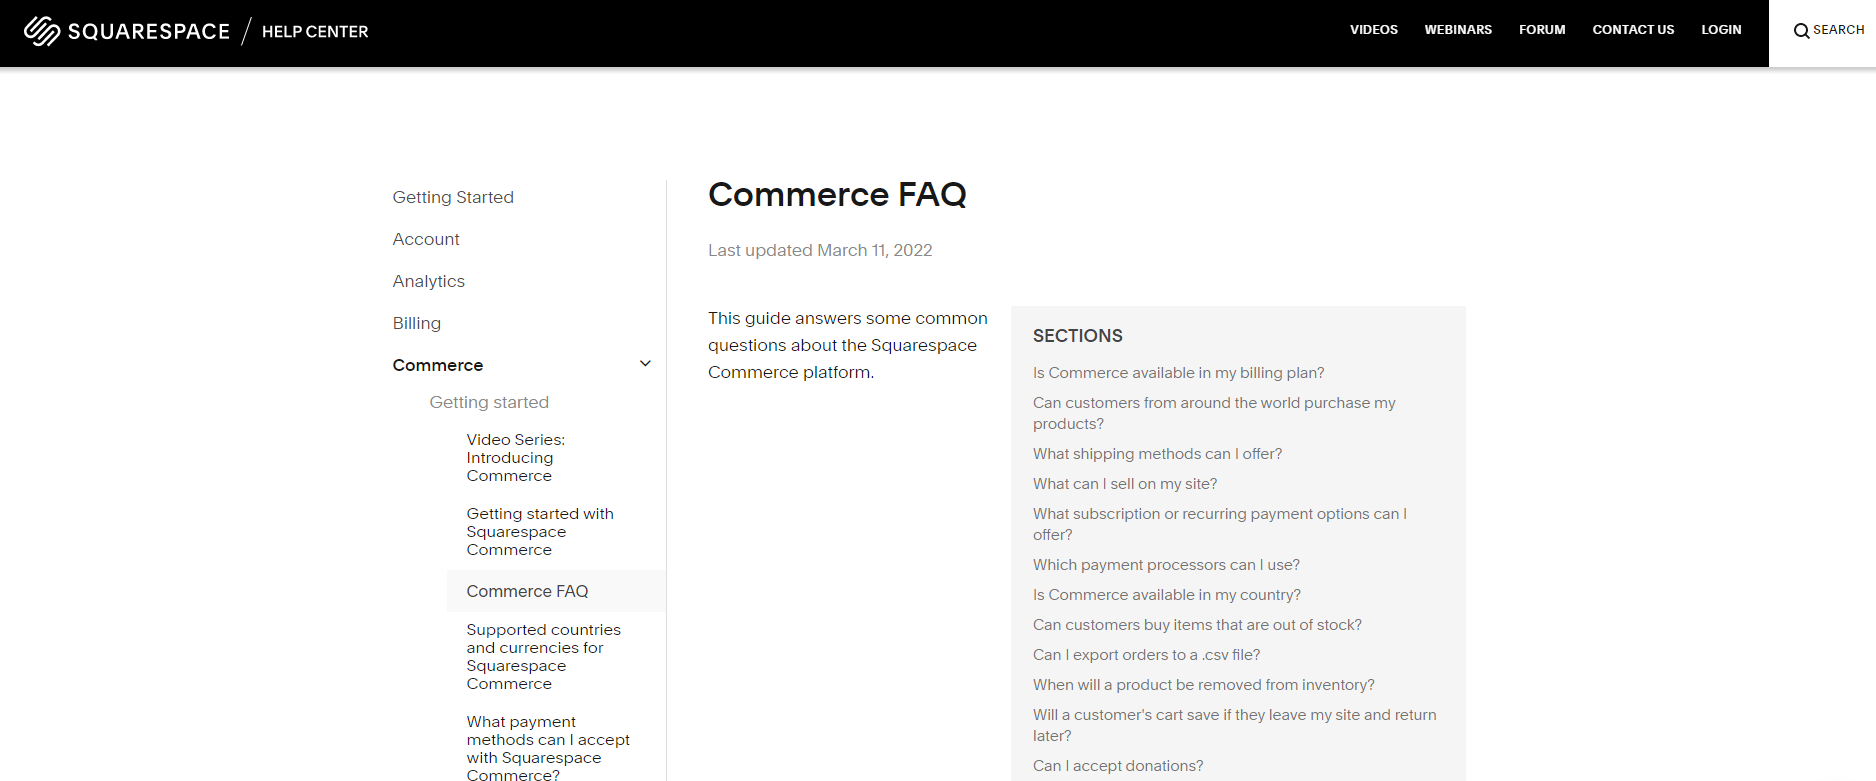 Commerce FAQ